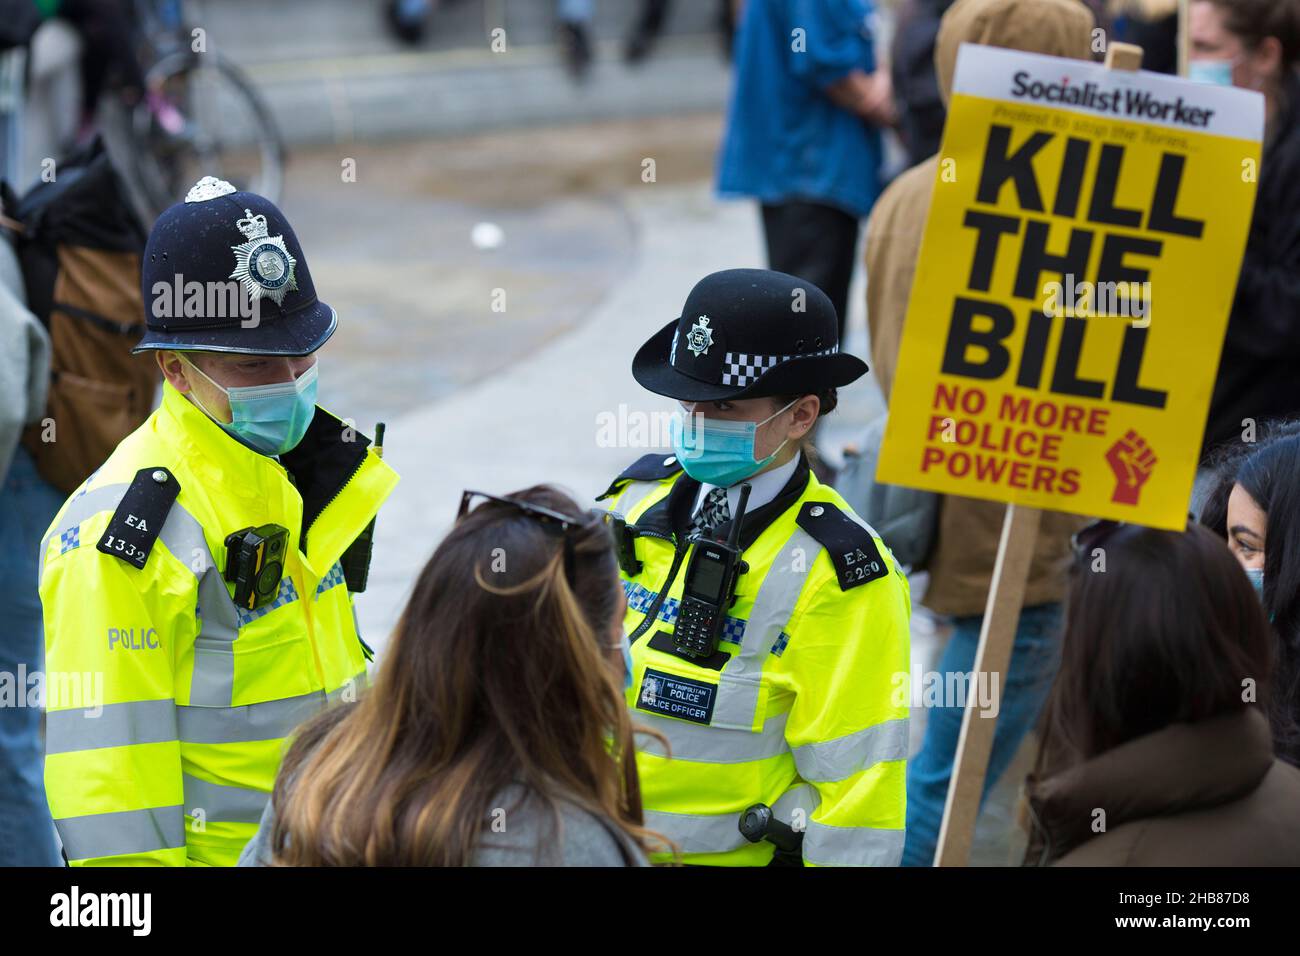 Los participantes se reúnen durante una protesta contra el proyecto de ley de policía, delito, sentencia y tribunales en Trafalgar Square en Londres. Foto de stock